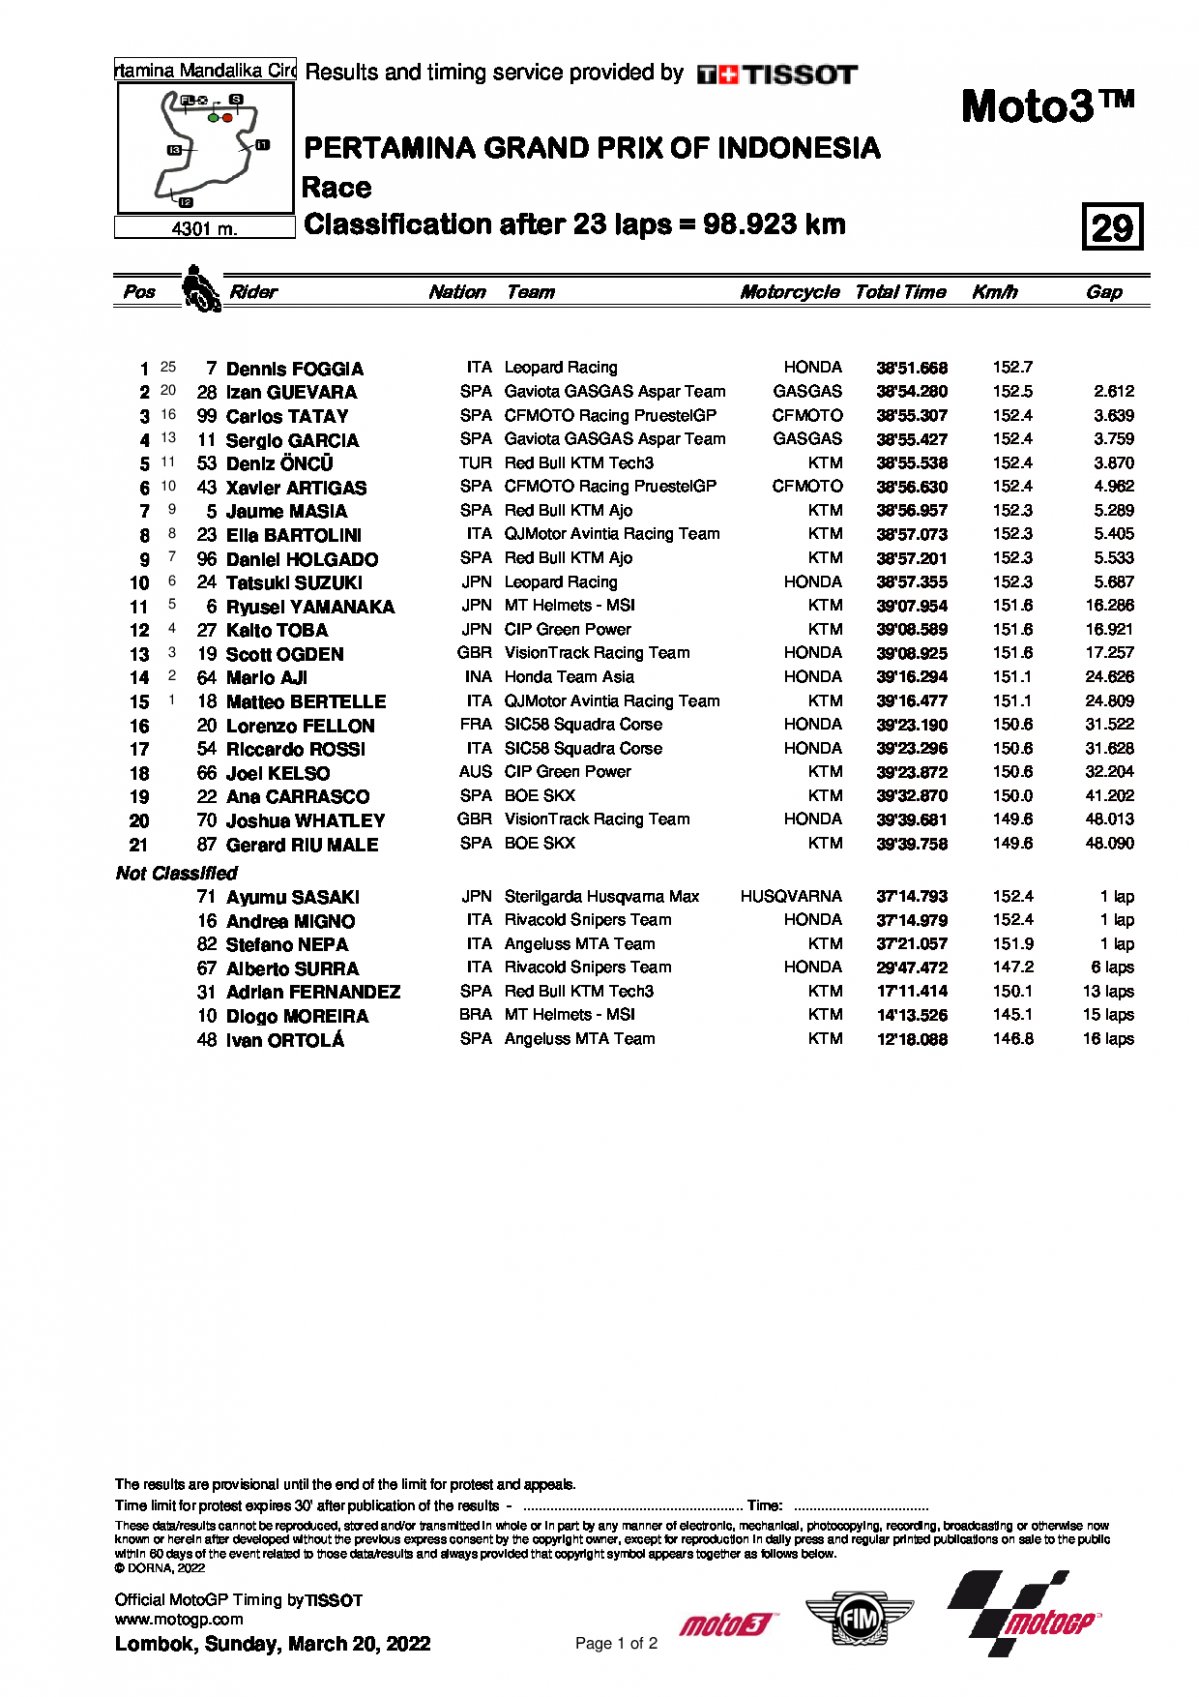 Результаты Гран-При Индонезии Moto3 (20/03/2022)